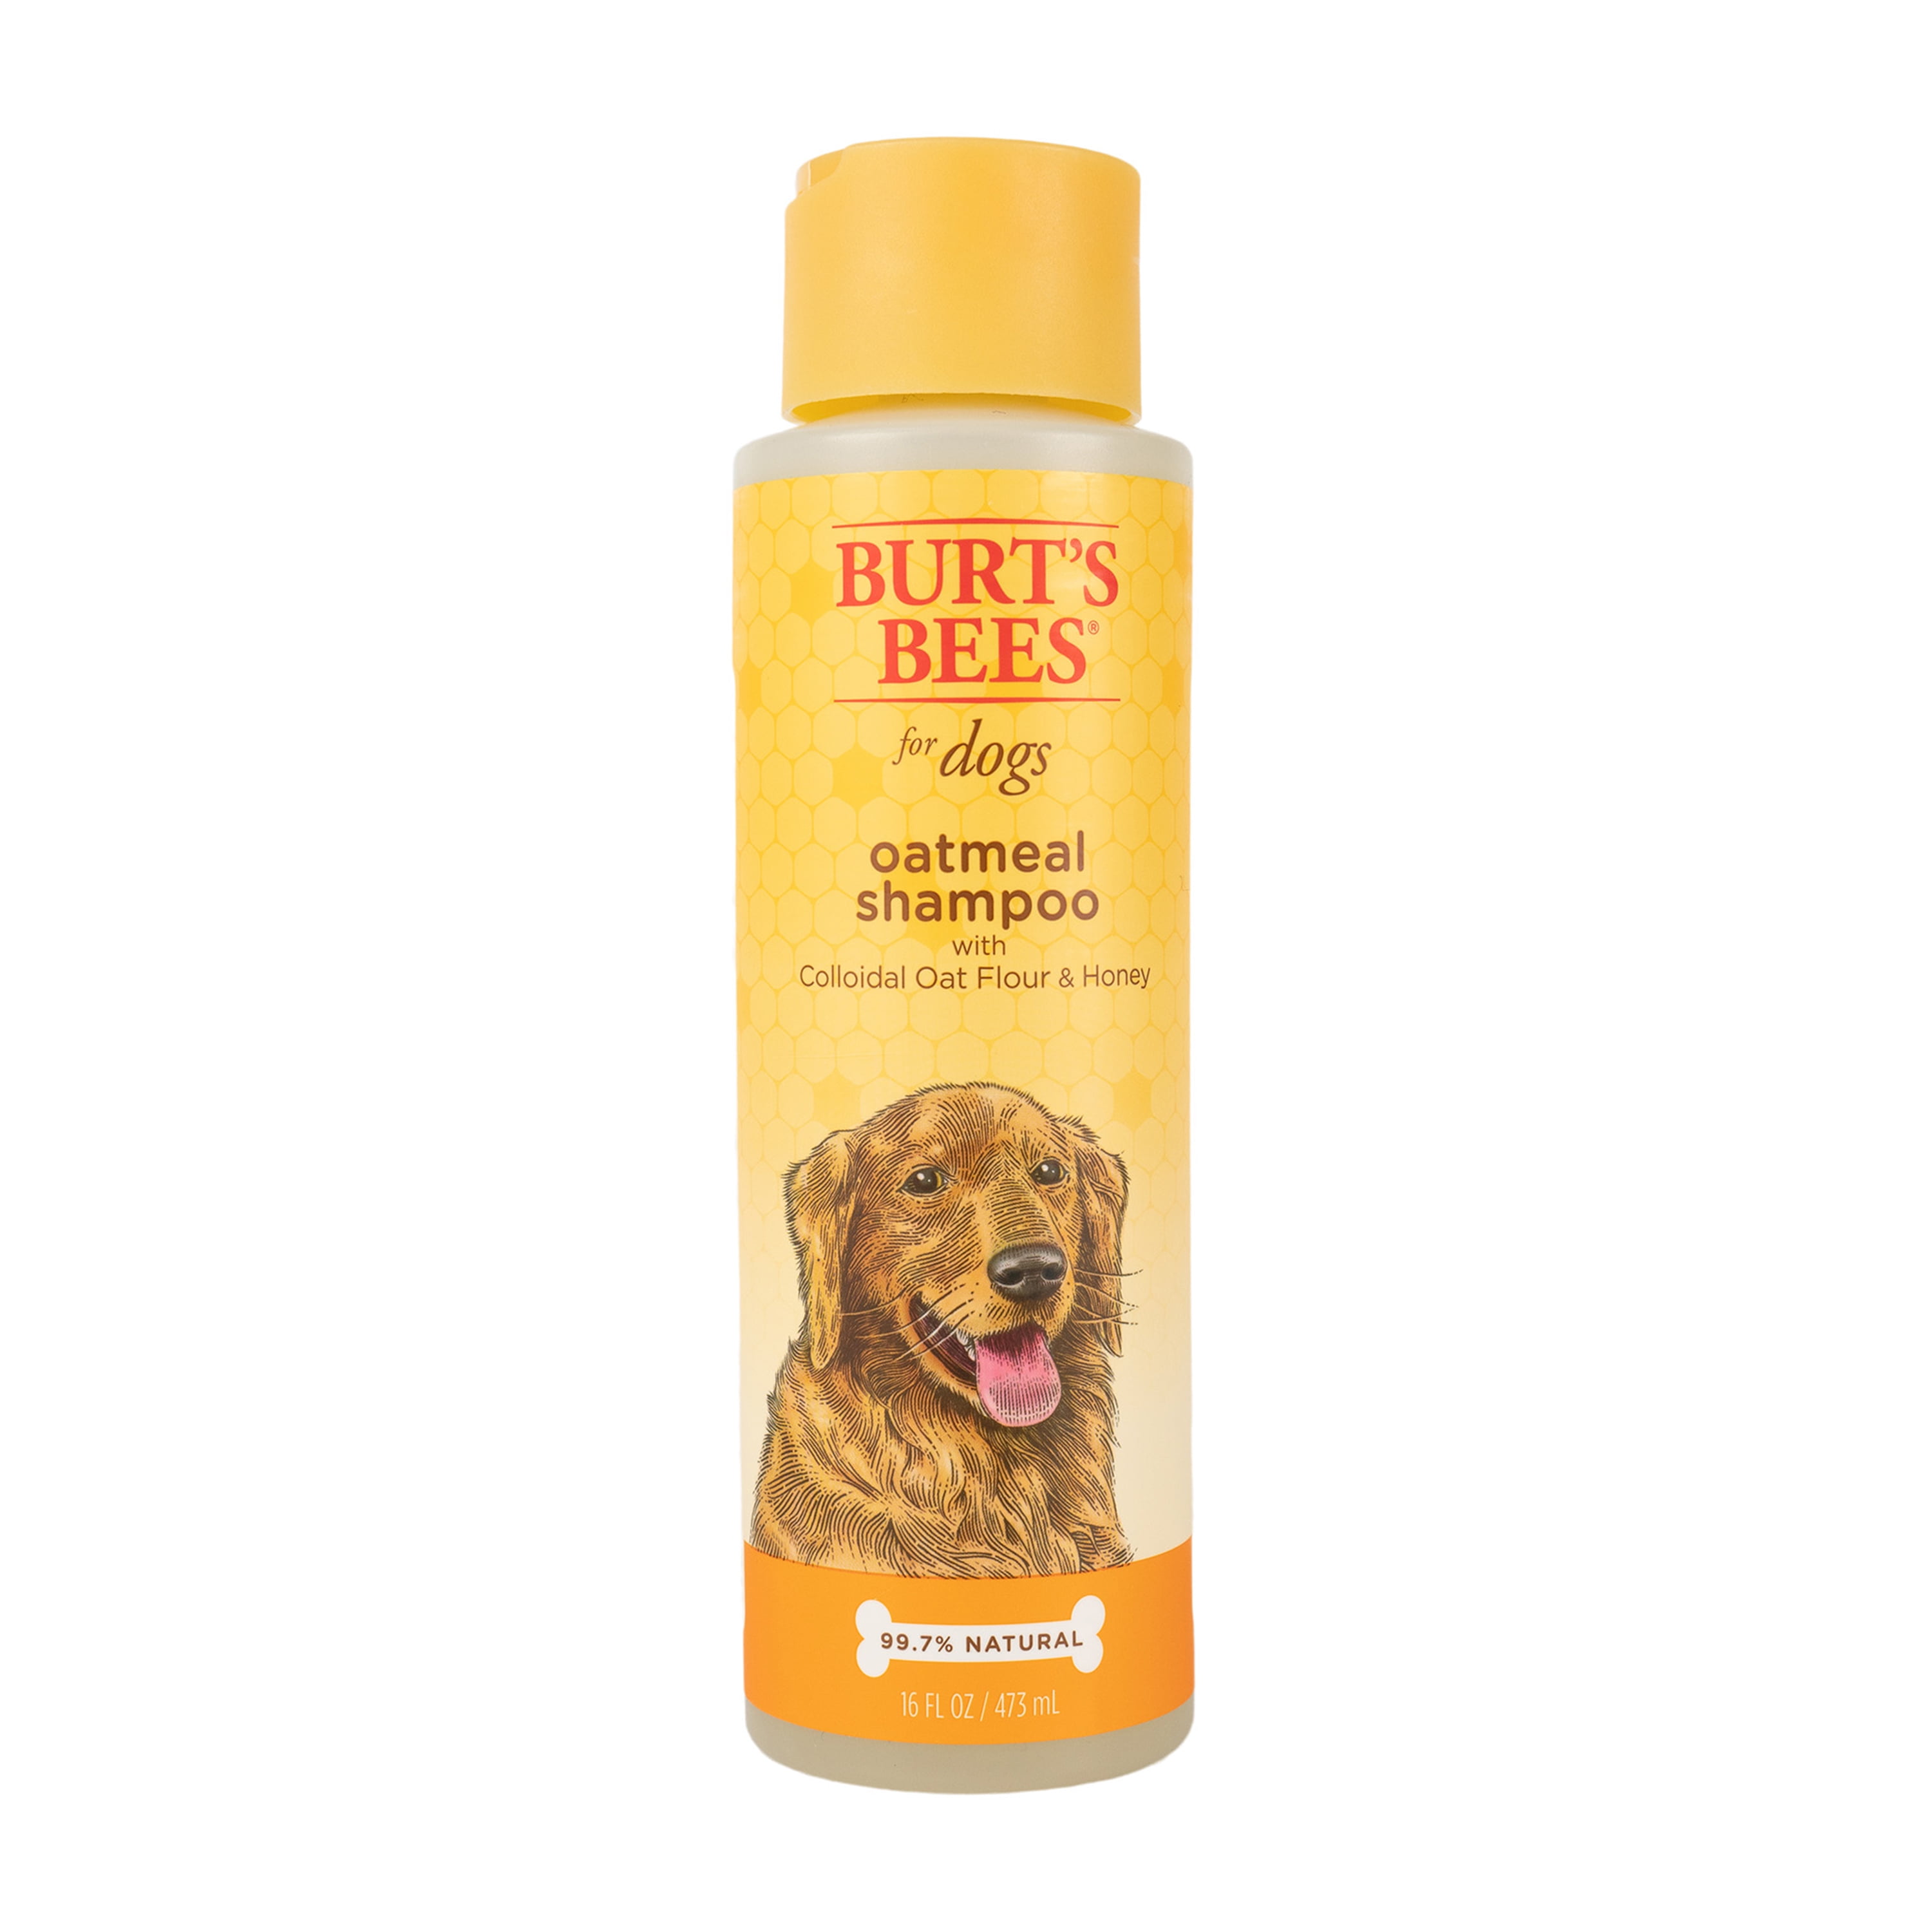 Burt's Bees Oatmeal Dog Shampoo with 